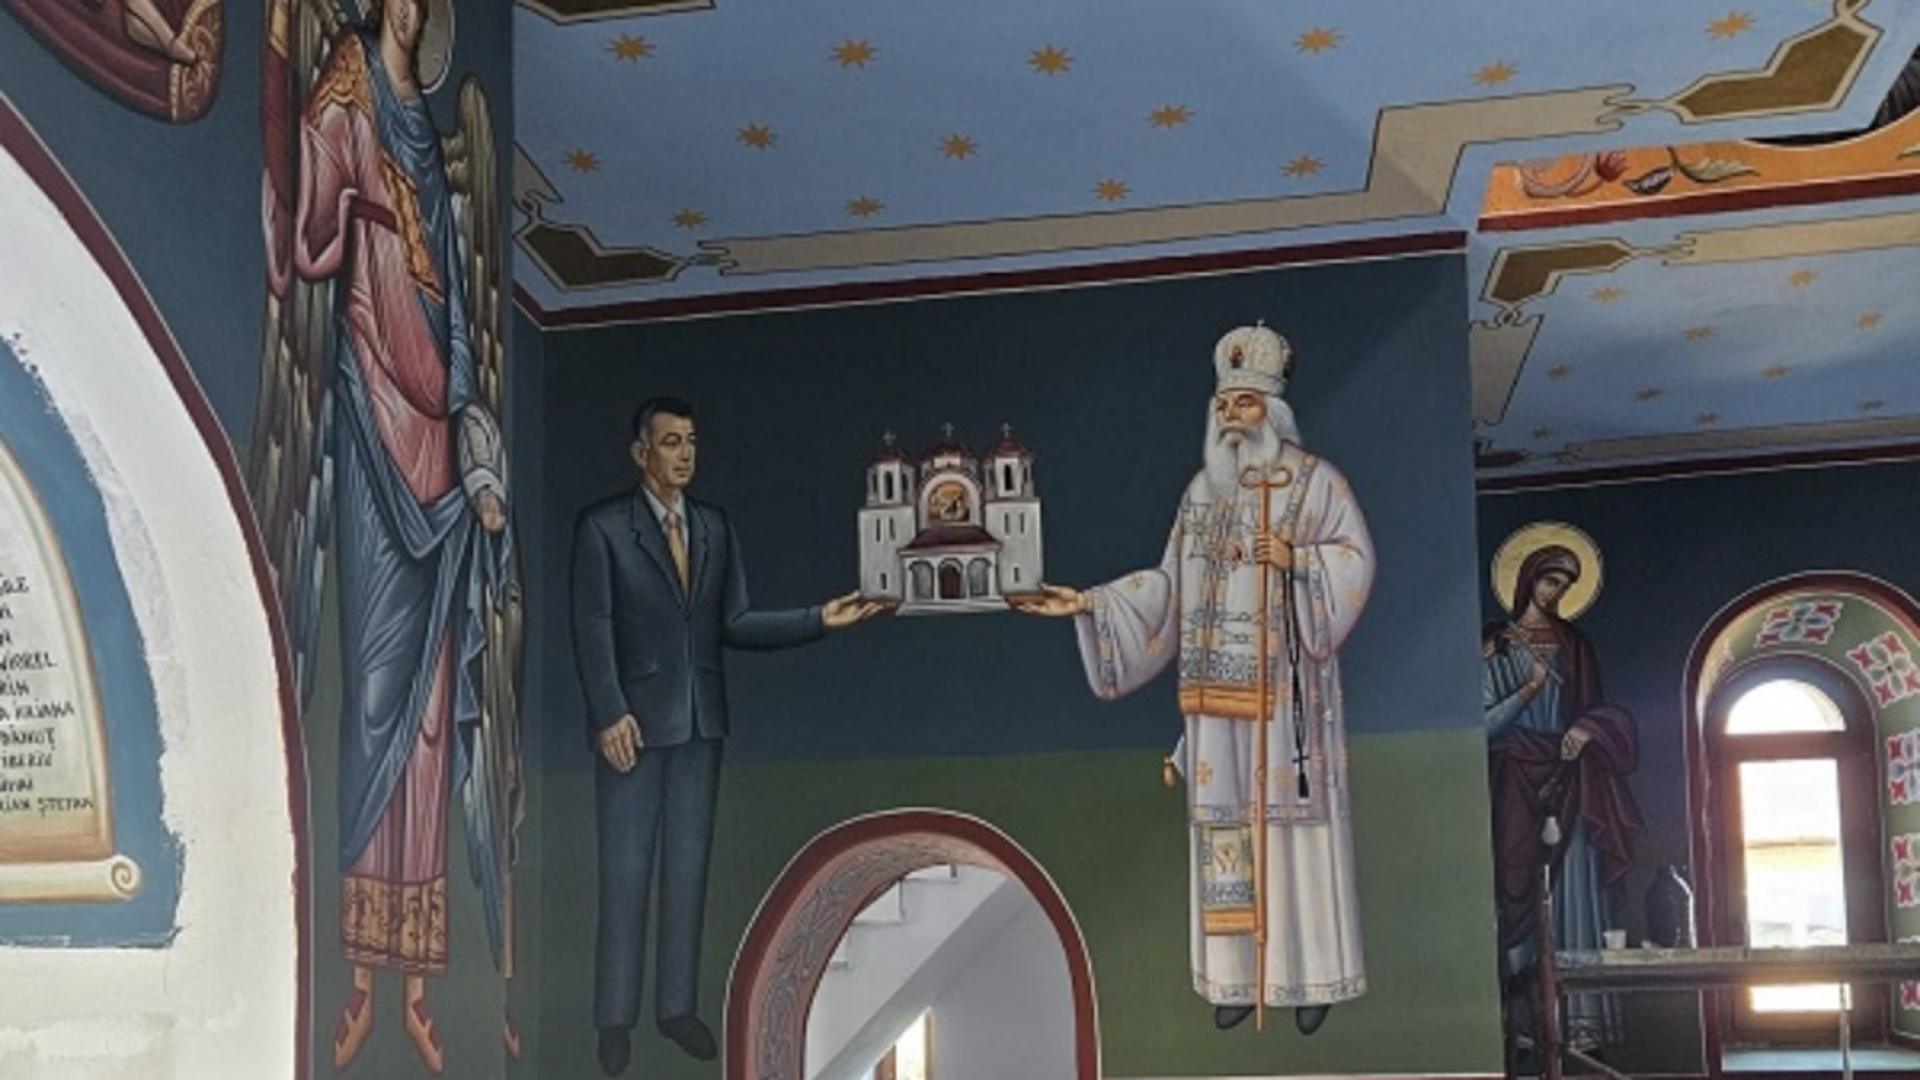 Șoc într-o biserică din Banat. Localnicii l-au descoperit pe primar pictat pe perete